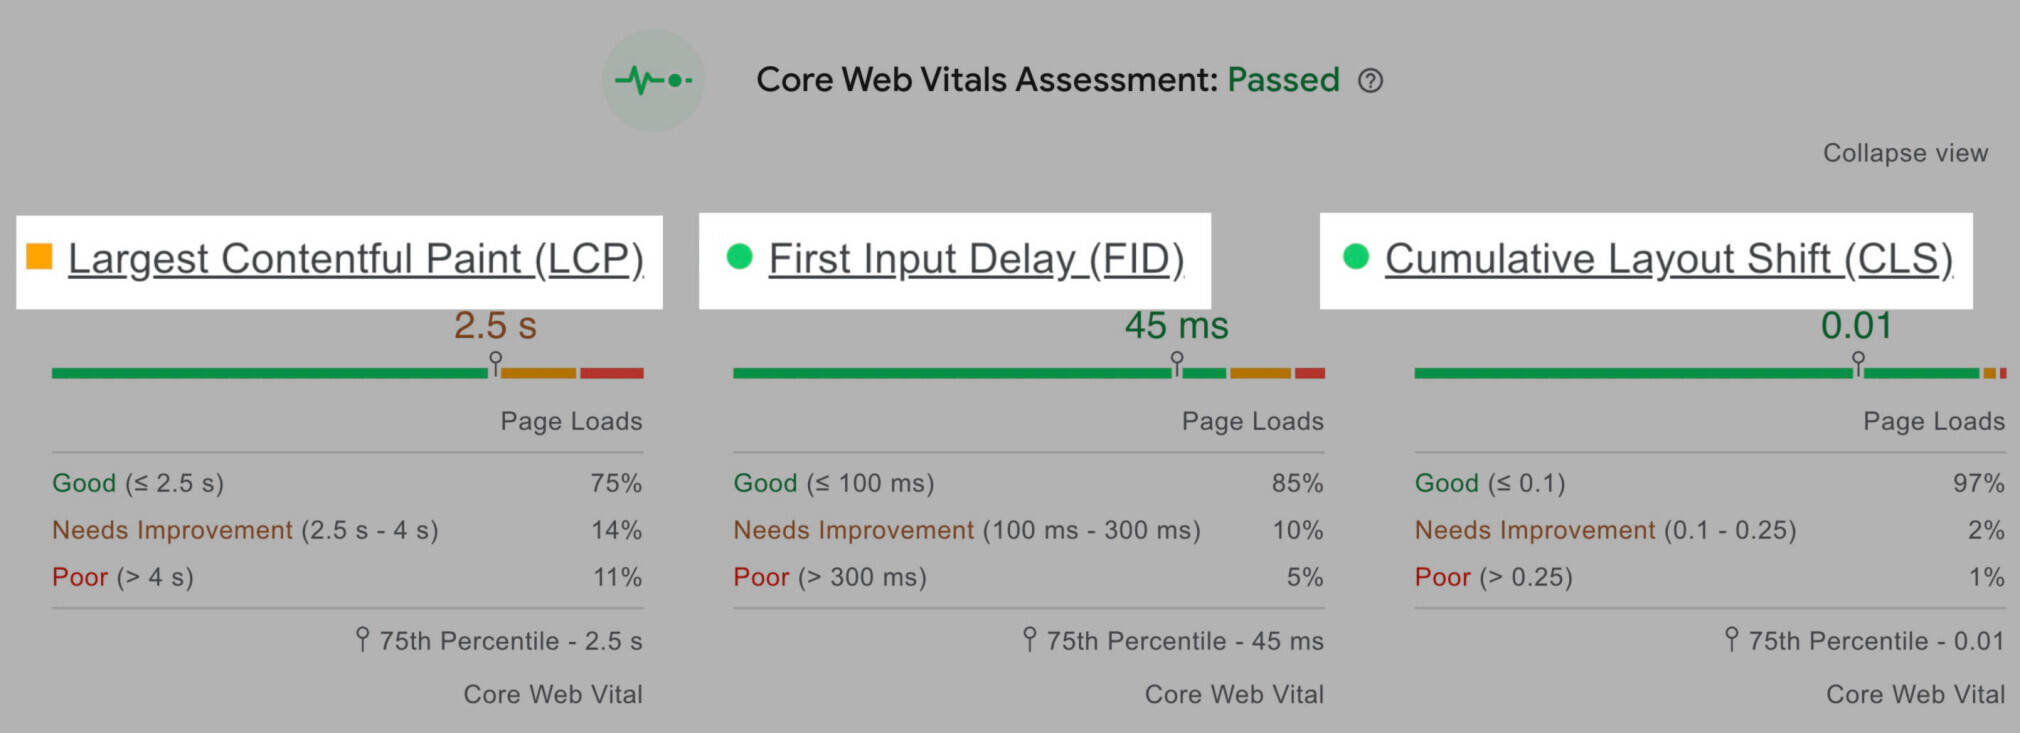 core web vitals metrics